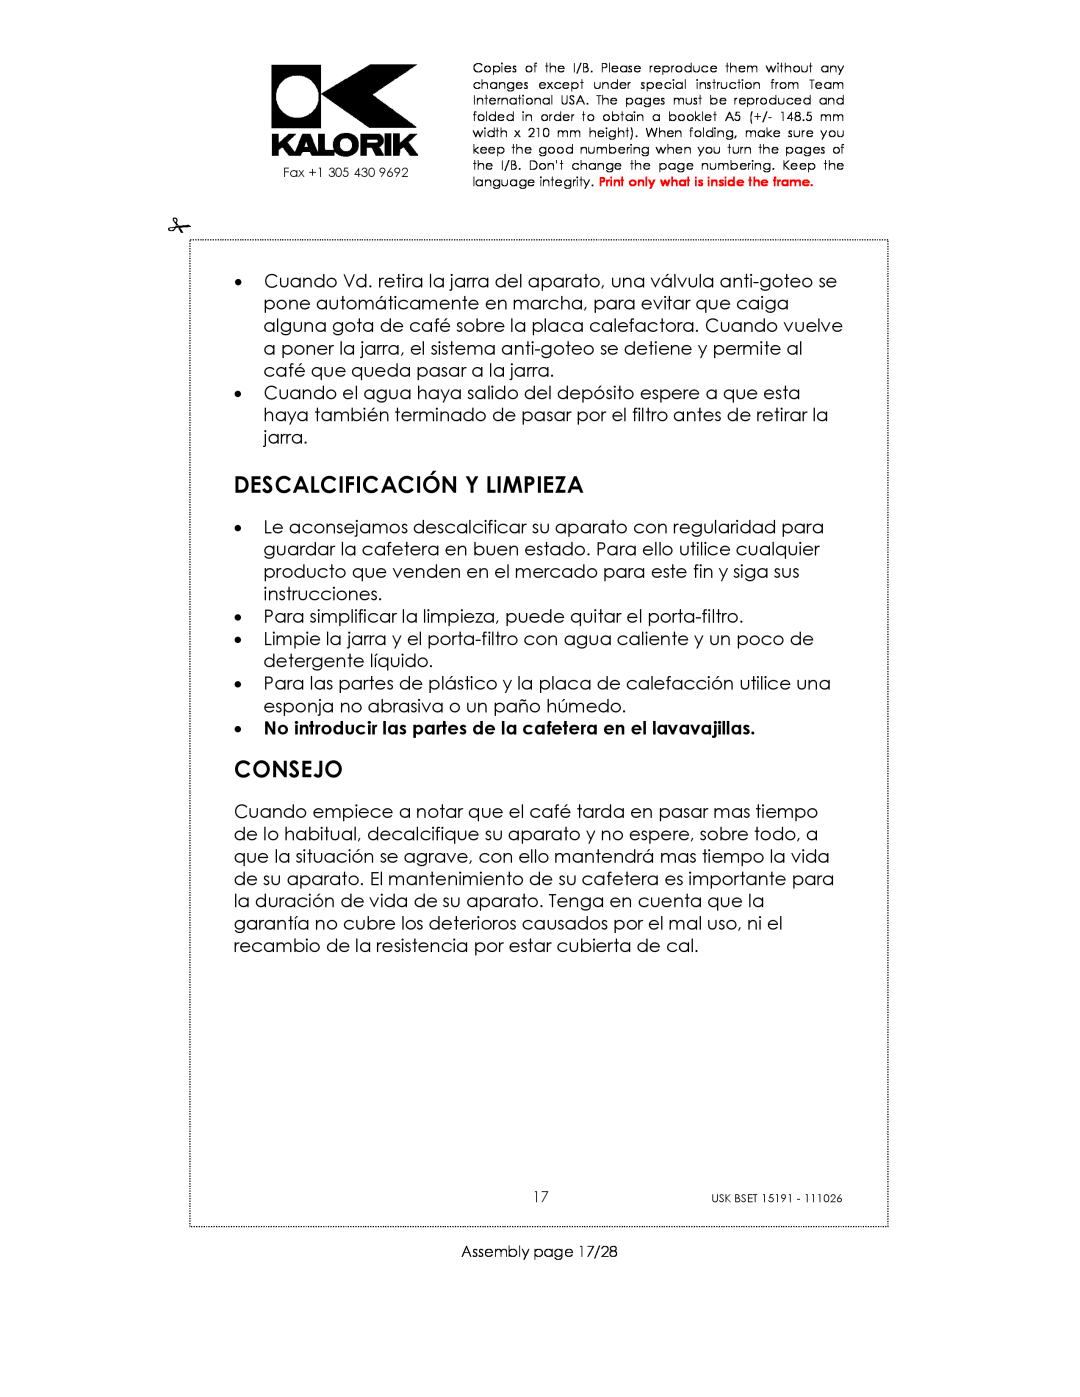 Kalorik USK BSET 15191 manual Descalcificación Y Limpieza, Consejo, Assembly page 17/28 